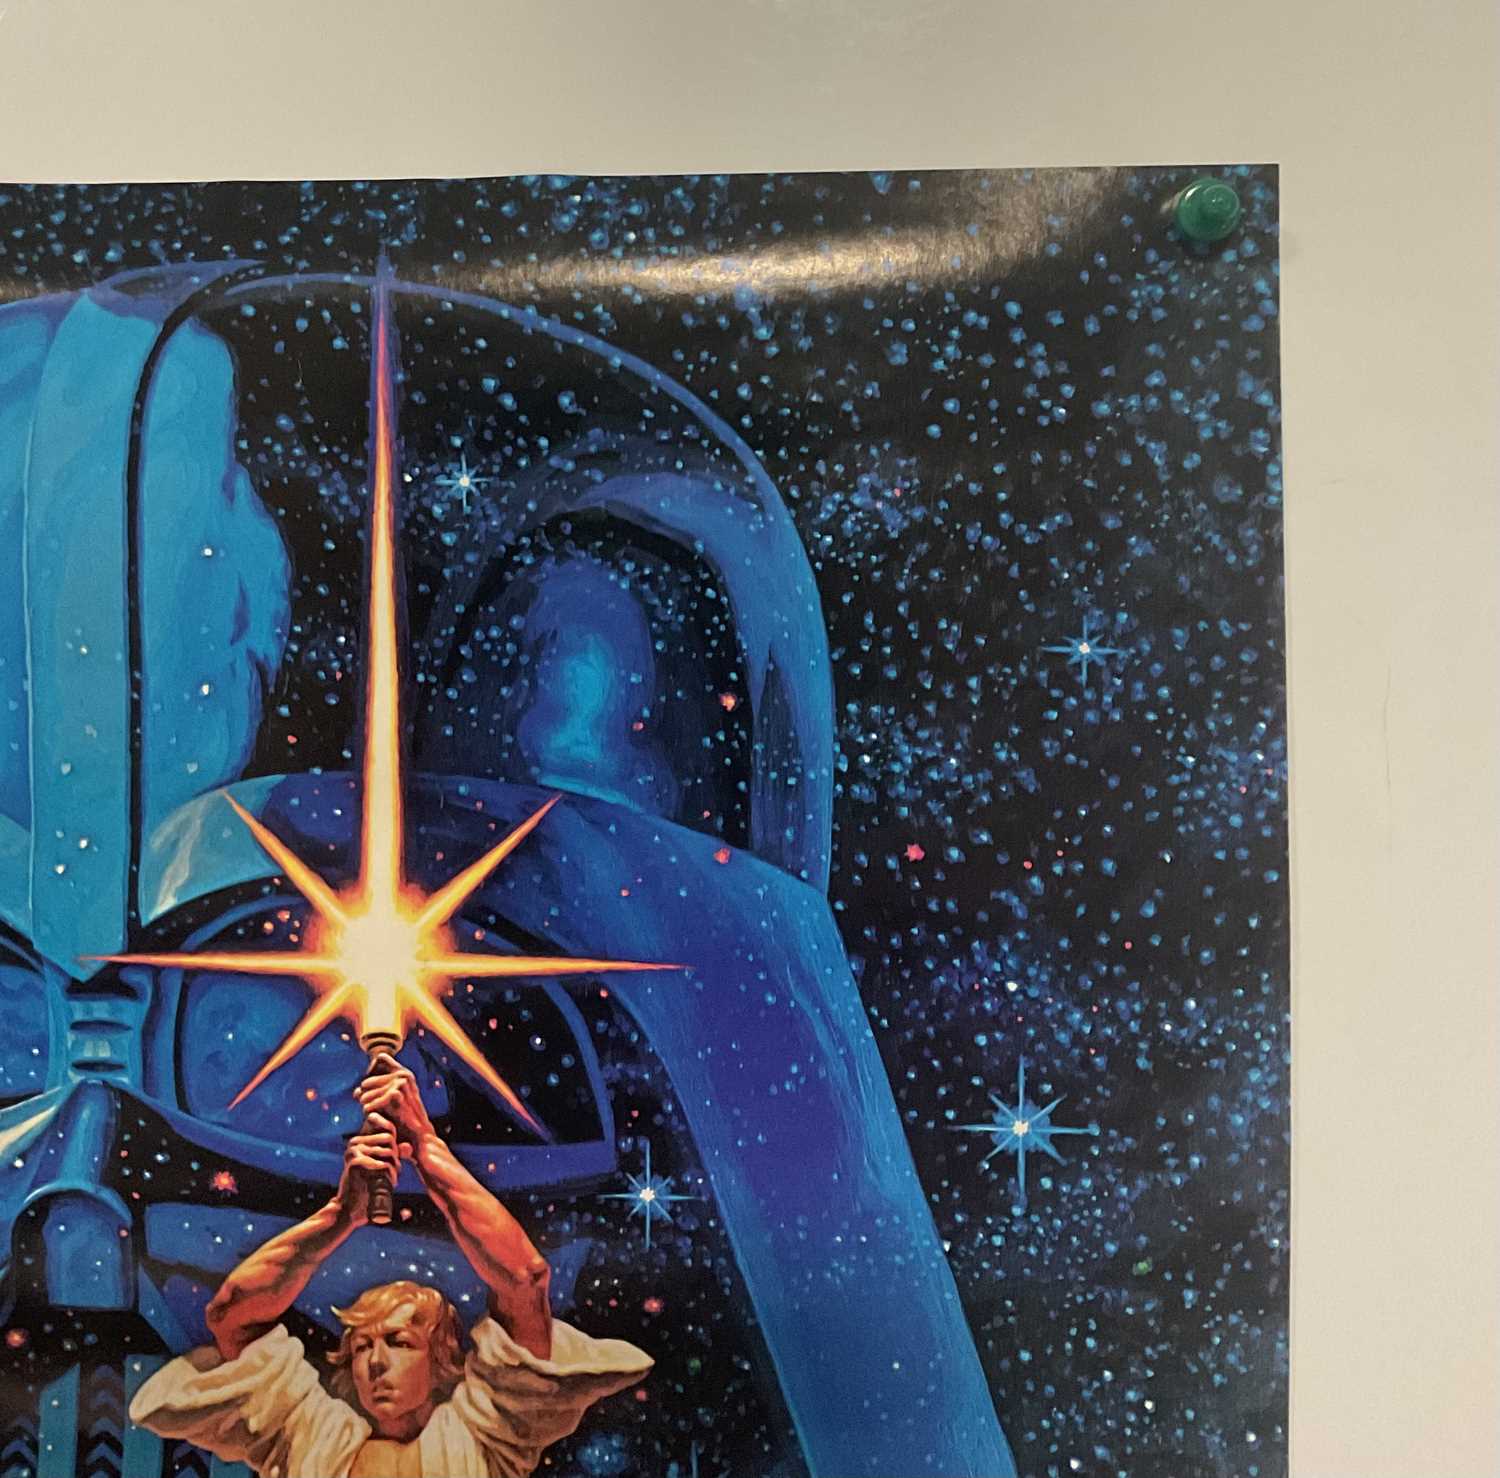 STAR WARS - commercial poster (Factors Inc,1977) - Hildebrandt artwork, 71cm x 51cm, rolled - Image 2 of 6